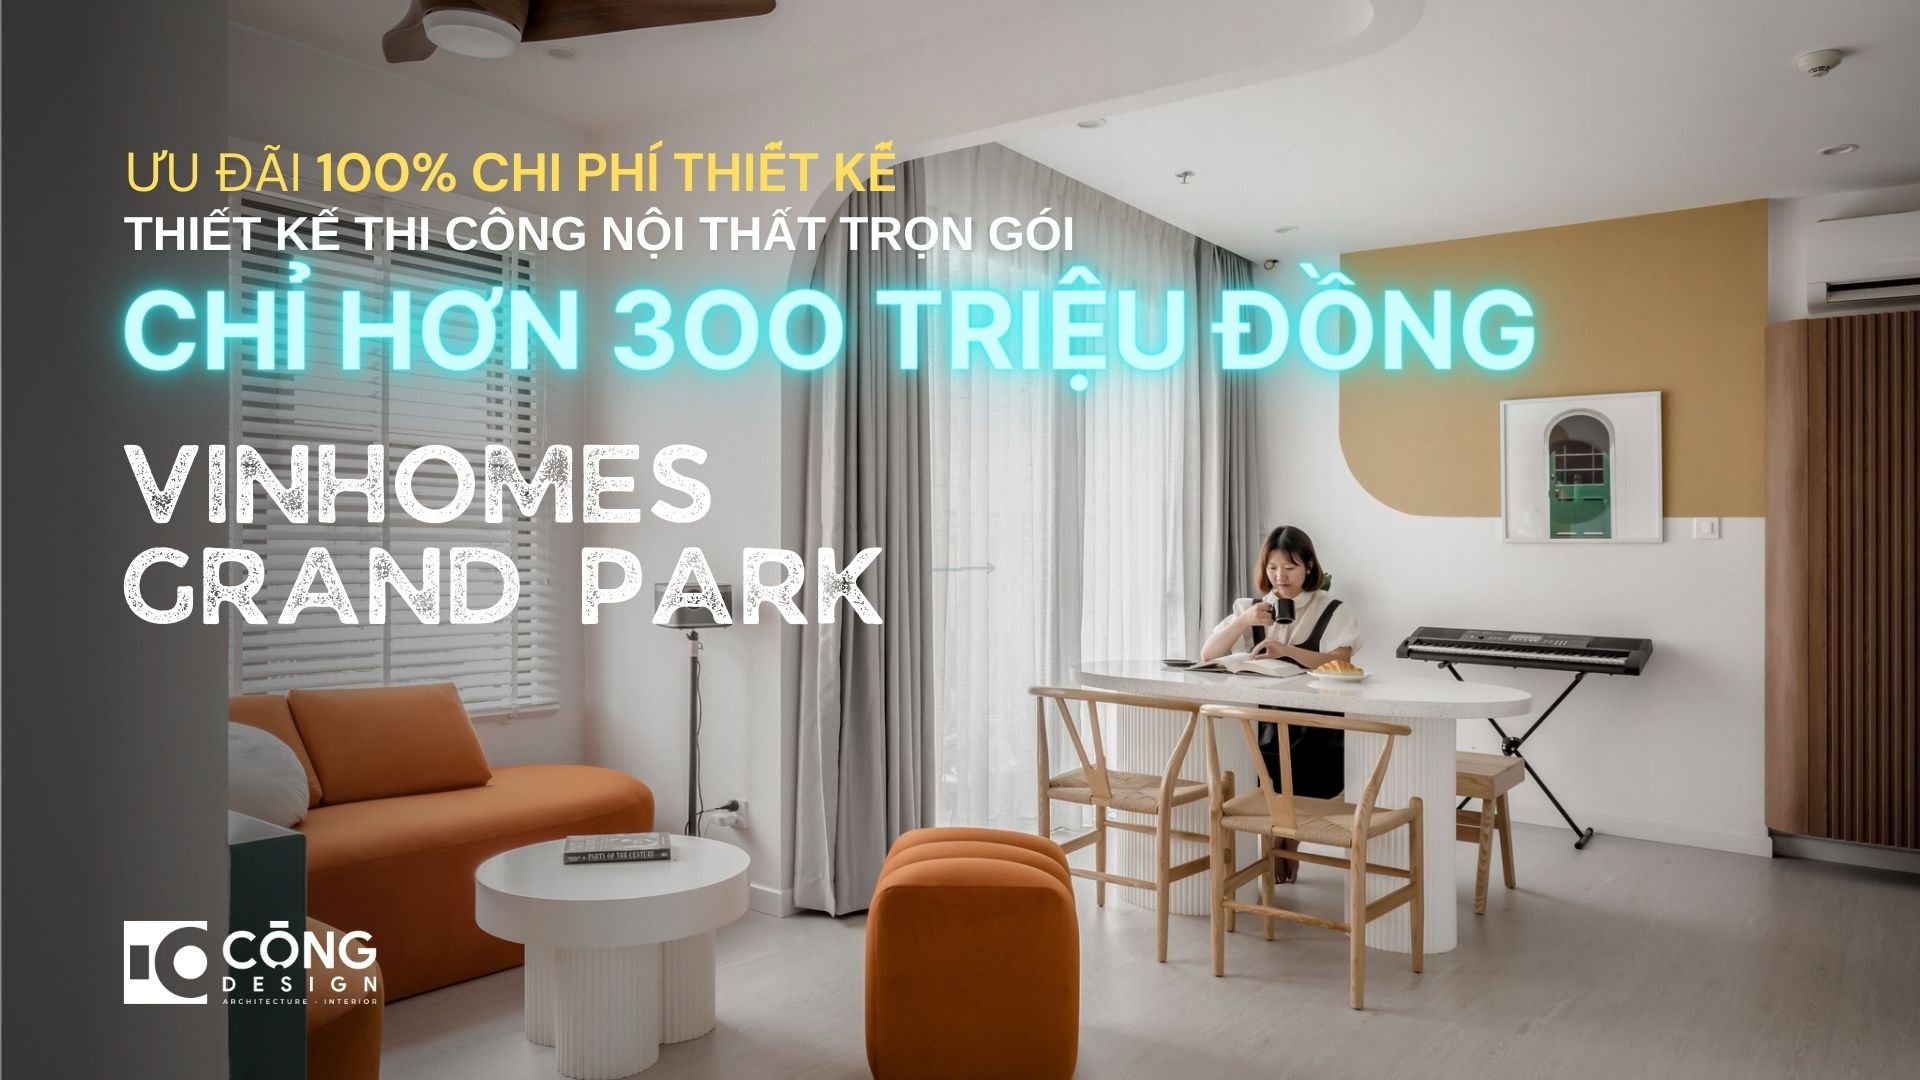 Căn hộ Vinhomes Grand Park: Thi công nội thất trọn gói chỉ hơn 300 Triệu